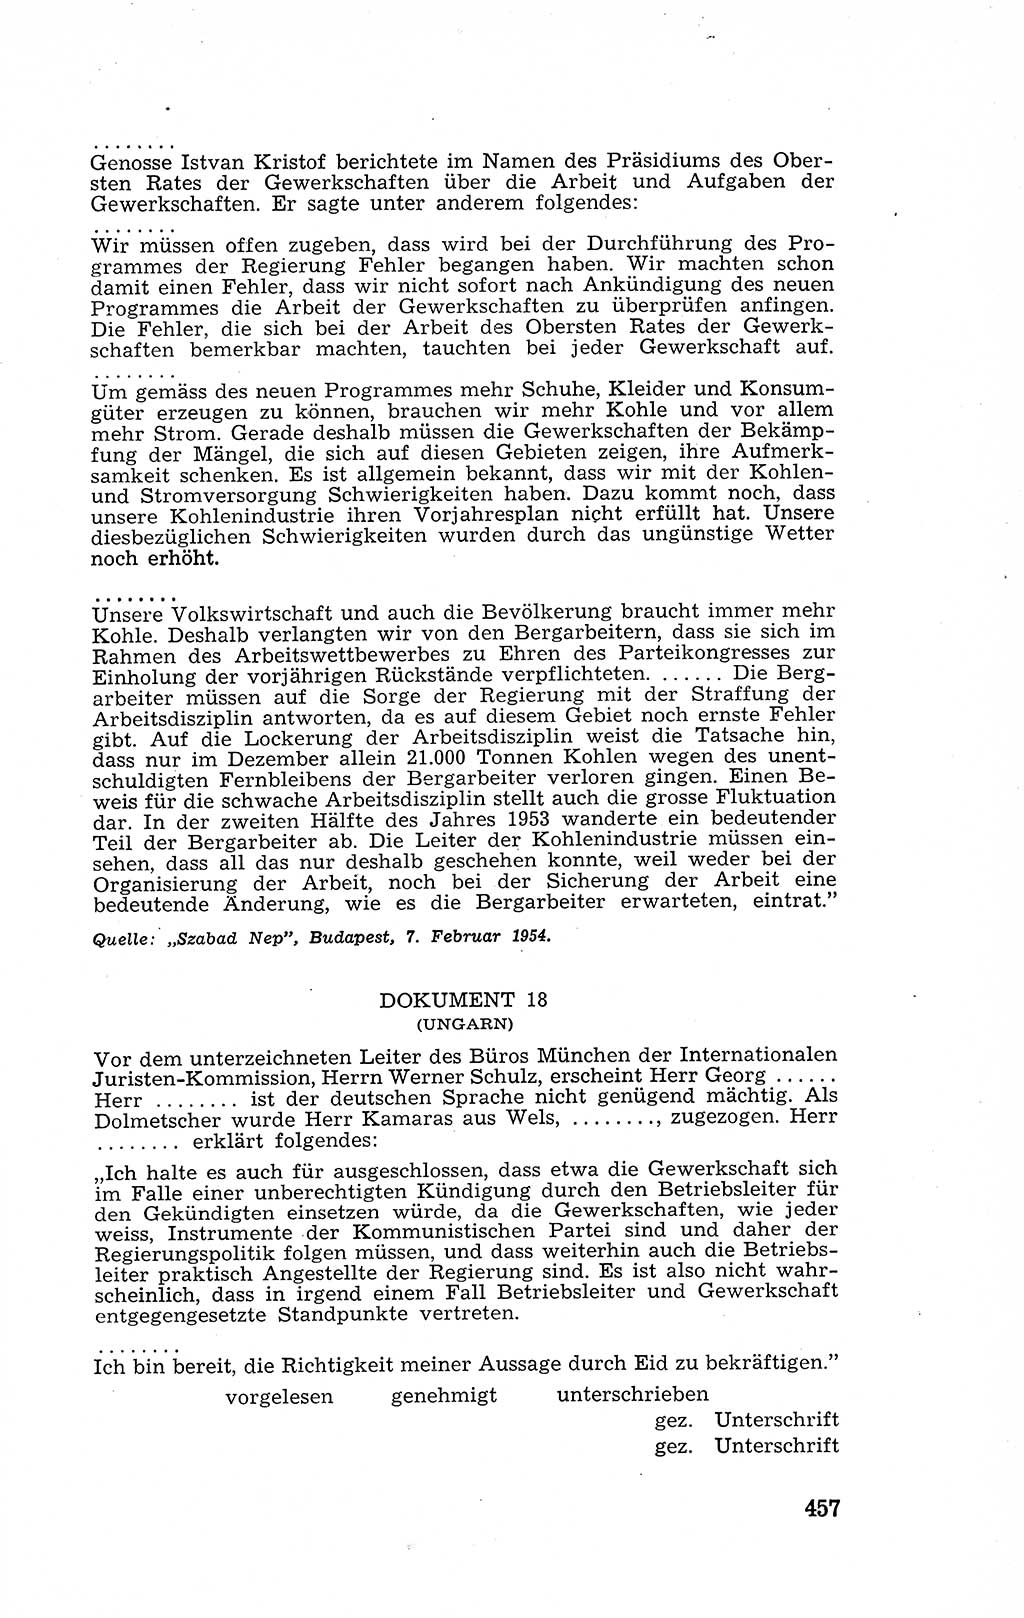 Recht in Fesseln, Dokumente, Internationale Juristen-Kommission [Bundesrepublik Deutschland (BRD)] 1955, Seite 457 (R. Dok. IJK BRD 1955, S. 457)